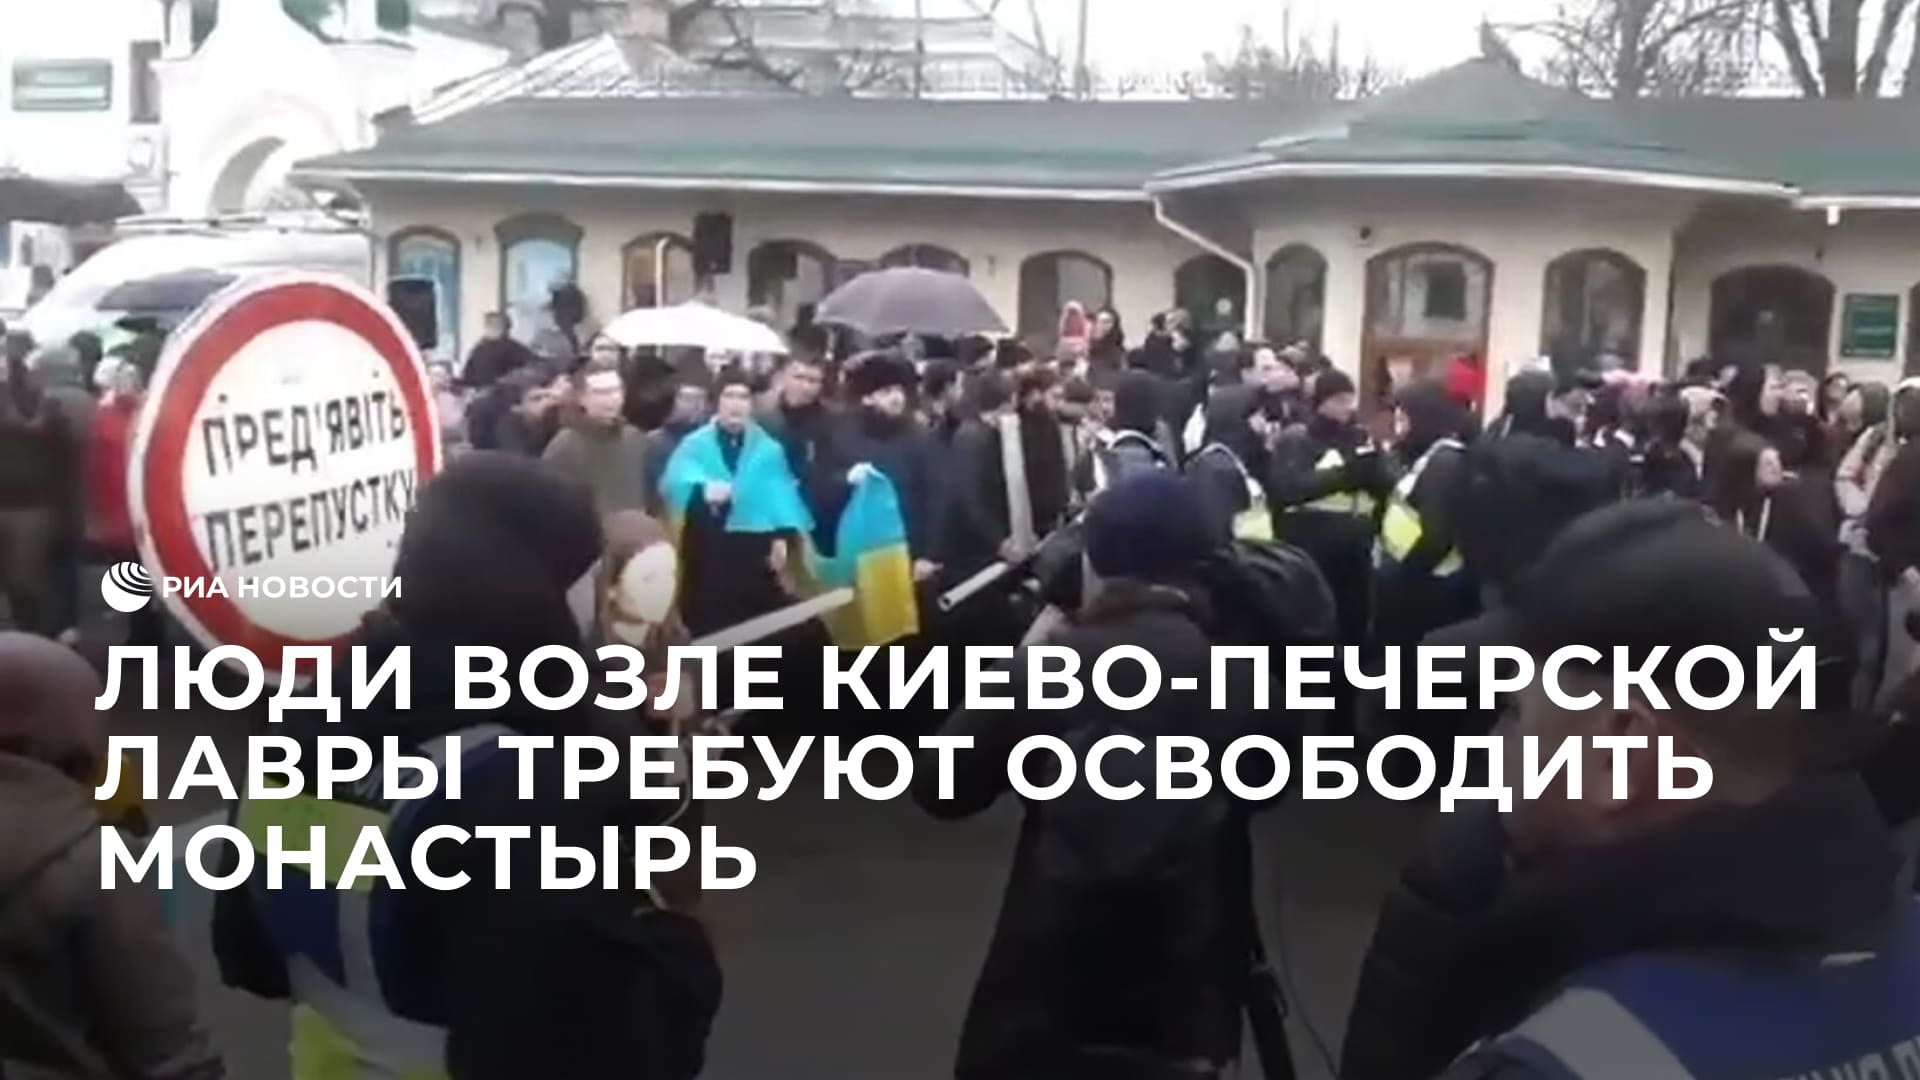 Люди возле Киево-Печерской лавры требуют освободить монастырь